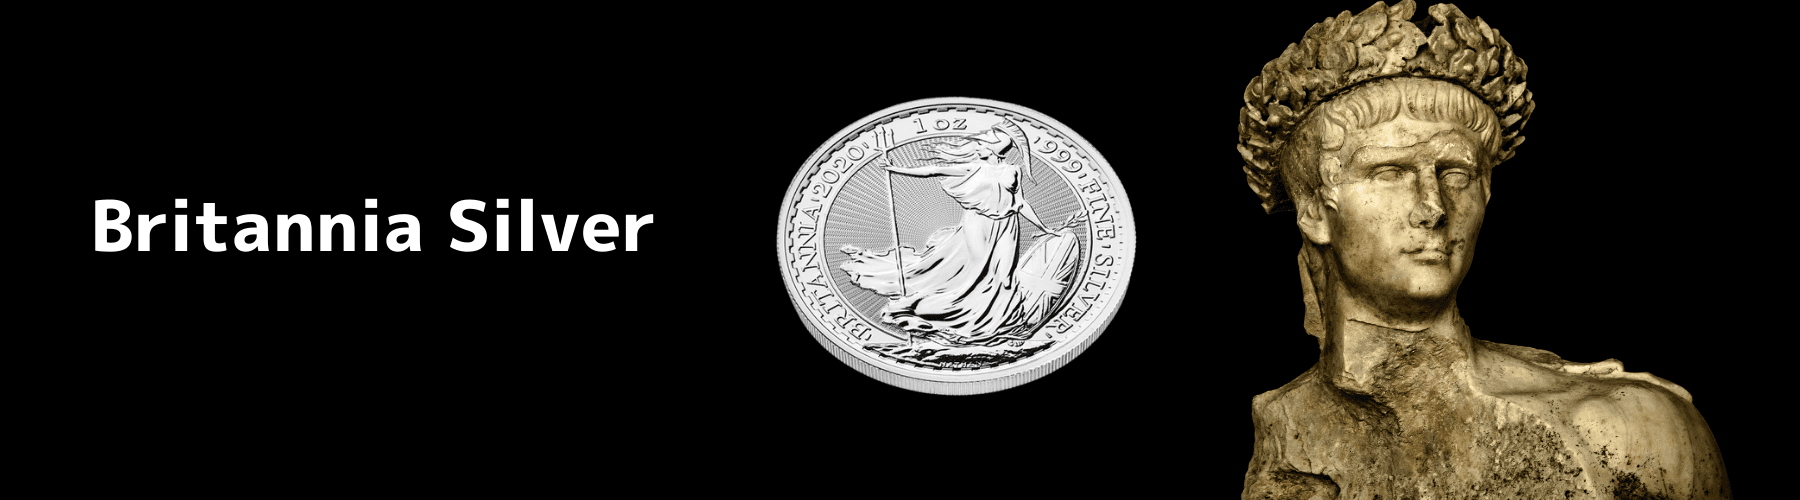 イギリス ブリタニア銀貨の紹介ページ